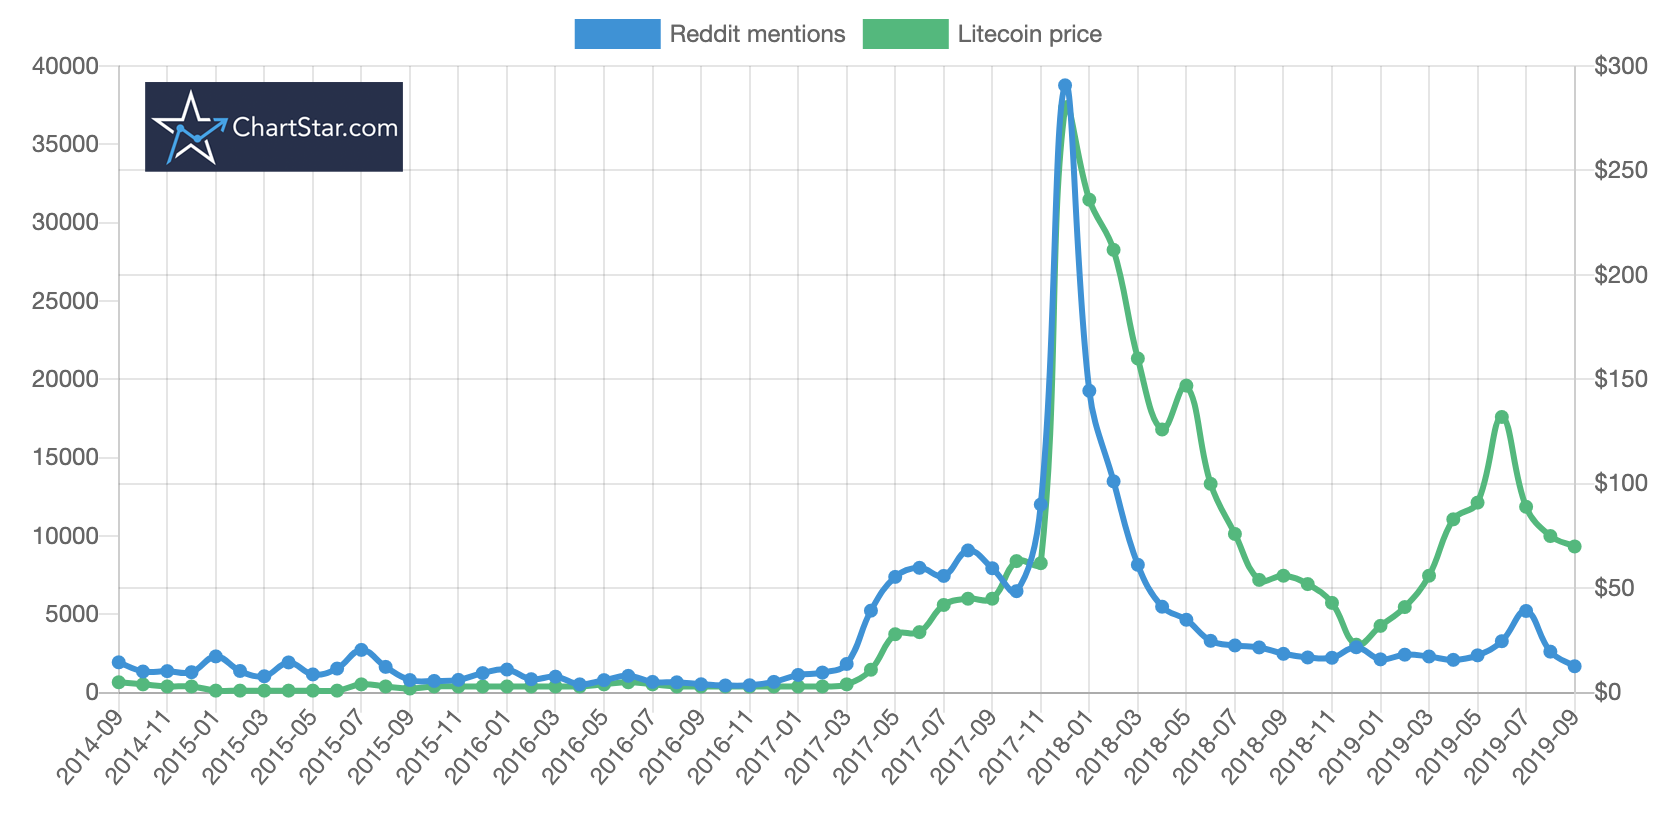 litecoin price vs reddit mentions